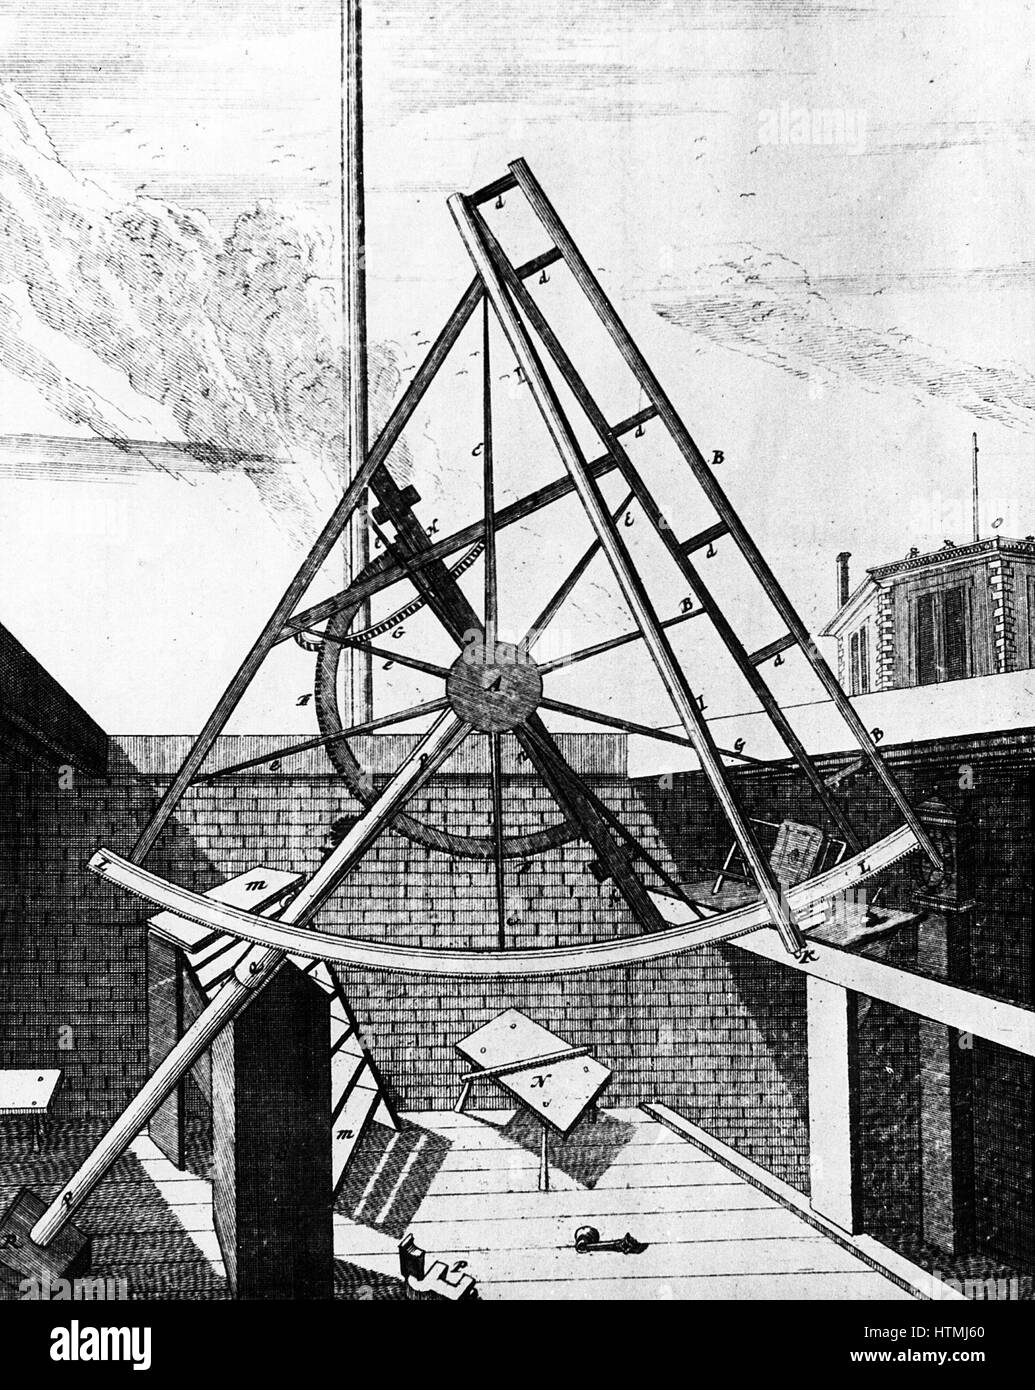 Position équatoriale de Flamsteed monté sextant équipé de télescope. Vue du côté du télescope. Le droit d'image est la partie supérieure de l'extérieur de la Salle Octogonale à Flamsteed House, Greenwich, construit sur ordre de Charles II (1630-1685) qui devint le premier R Banque D'Images